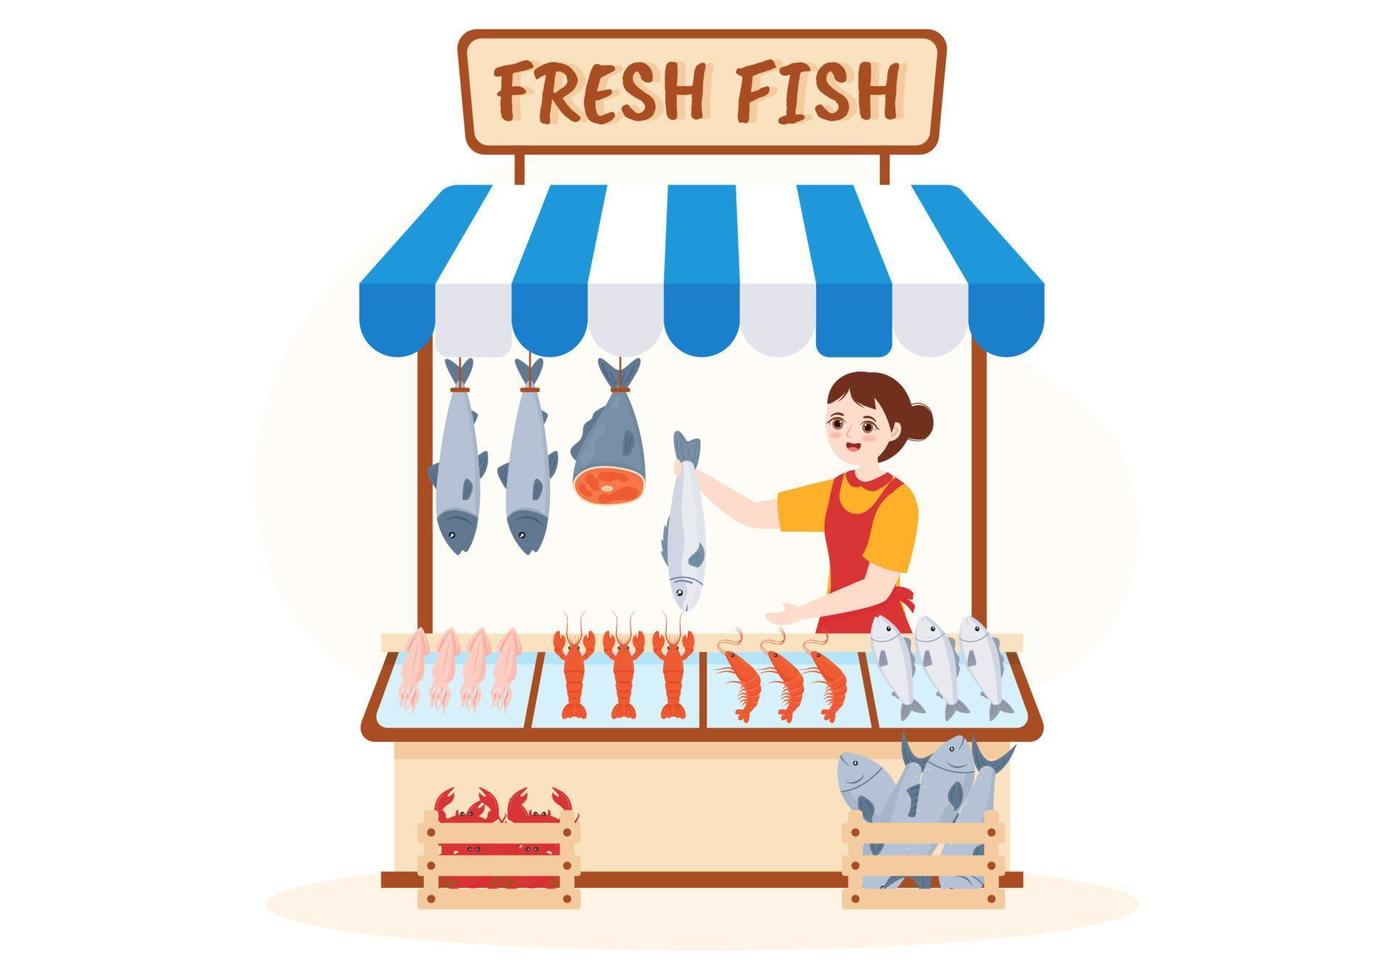 poissonnerie pour commercialiser divers produits frais et hygiéniques fruits de mer en dessin animé plat illustration de modèles dessinés à la main vecteur